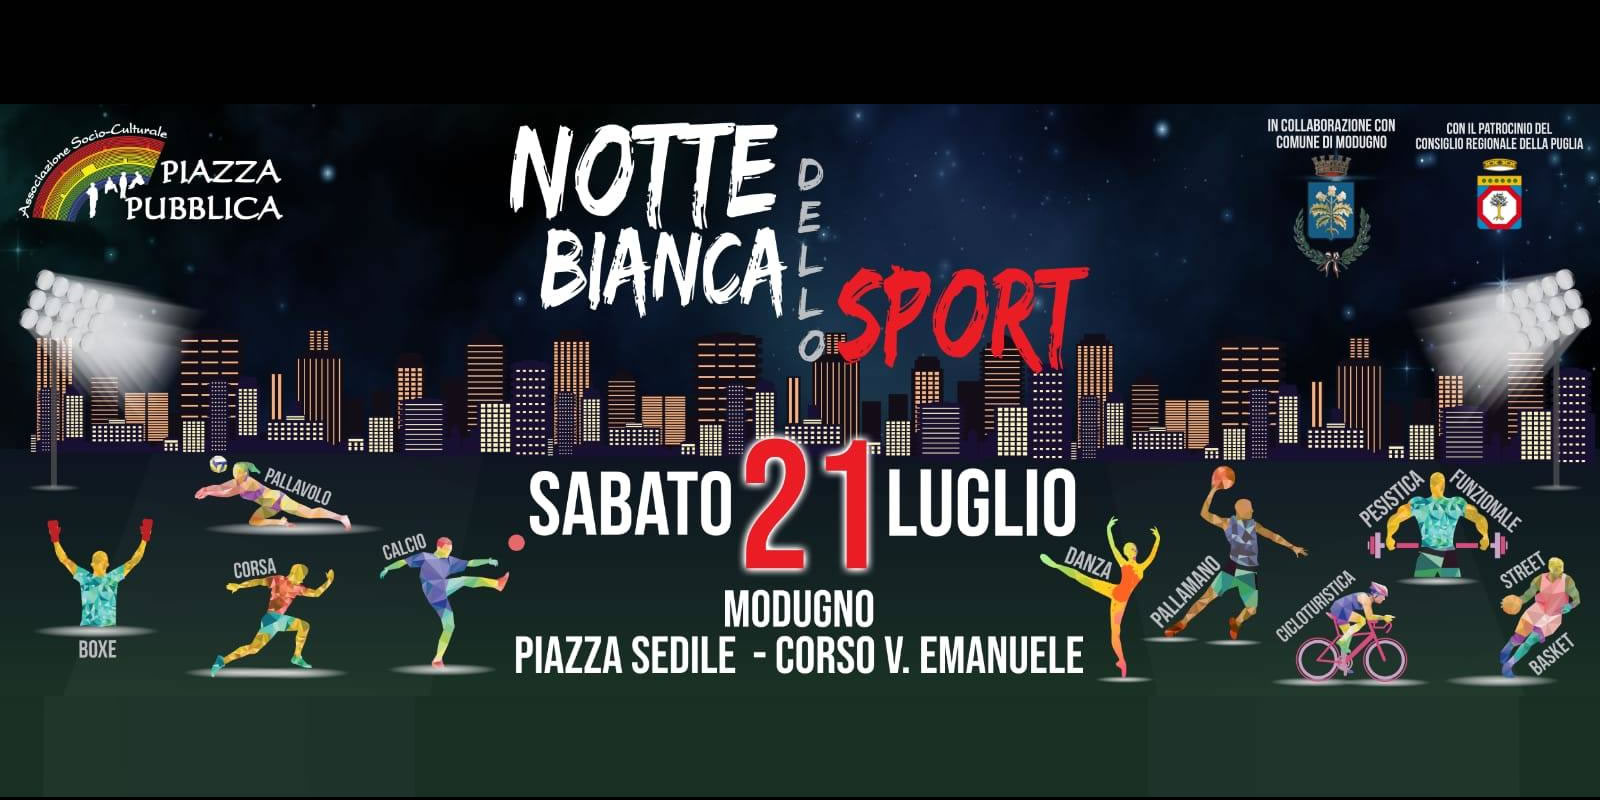 Notte Bianca Dello Sport - Modugno 2018